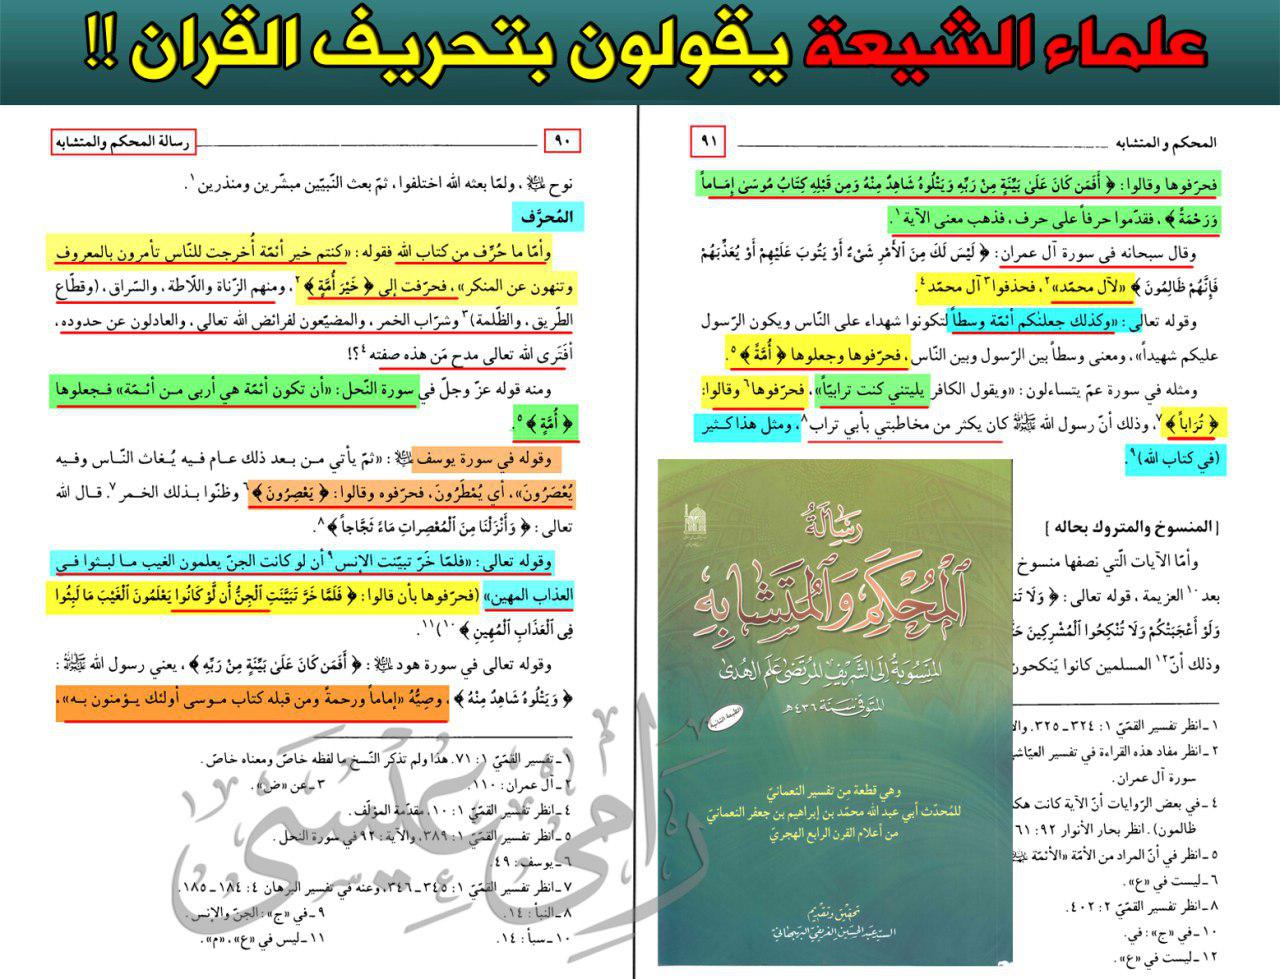 بالوثائق.. علماء الشيعة يعترفون بتحريف القرآن الكريم!